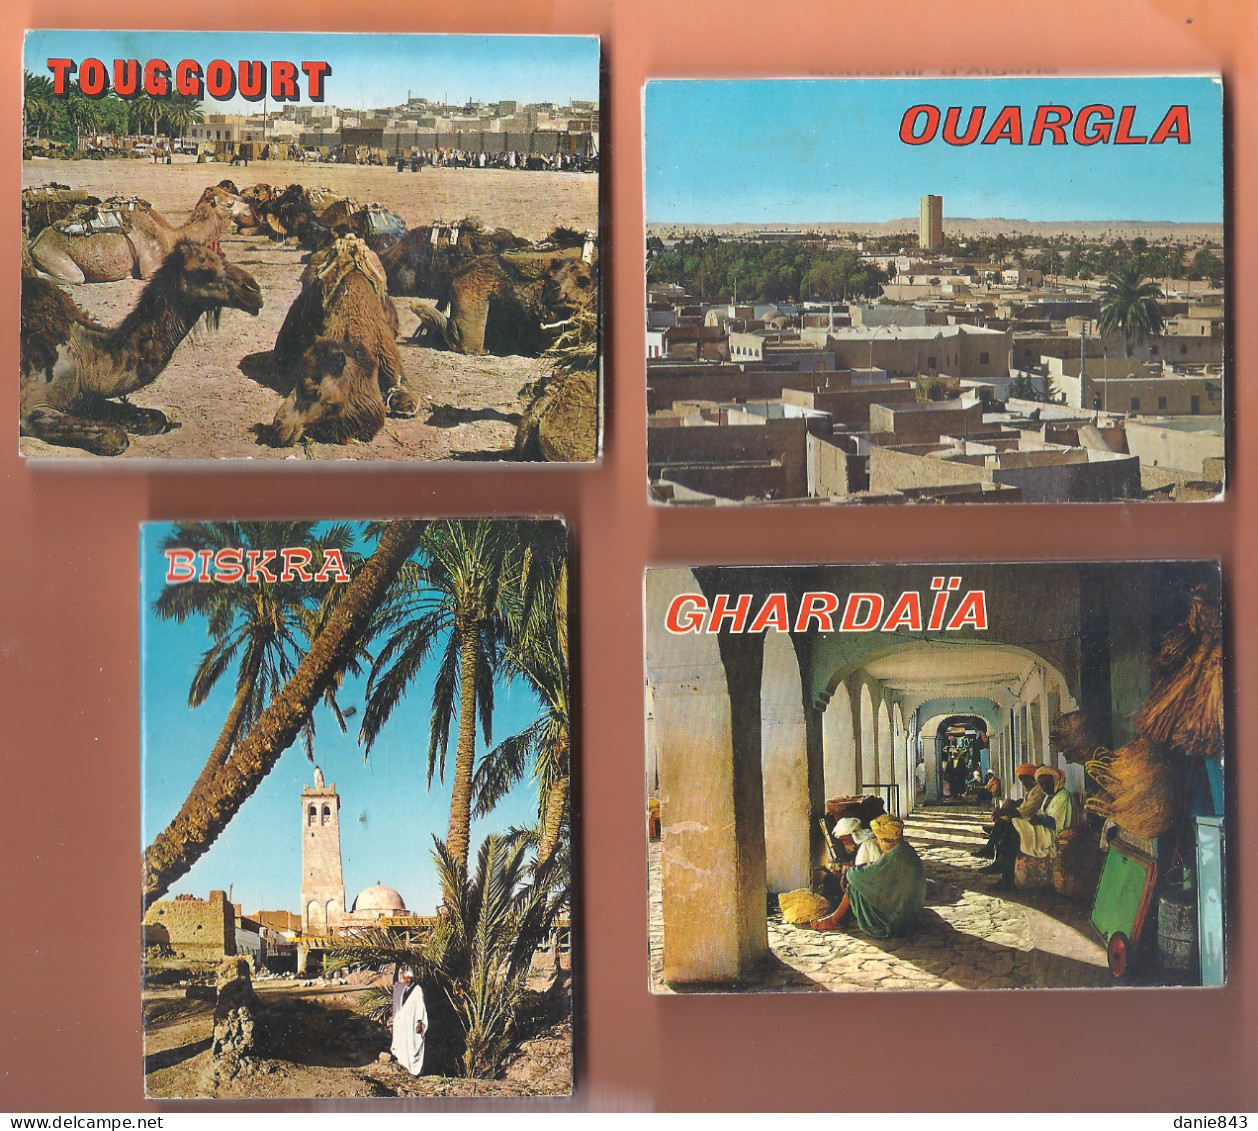 Lot de 22 Pochettes de 10 à 20 photos - Europe et Algérie - Format entre 4/6 et 7.5/10.5 - environs 300 photos